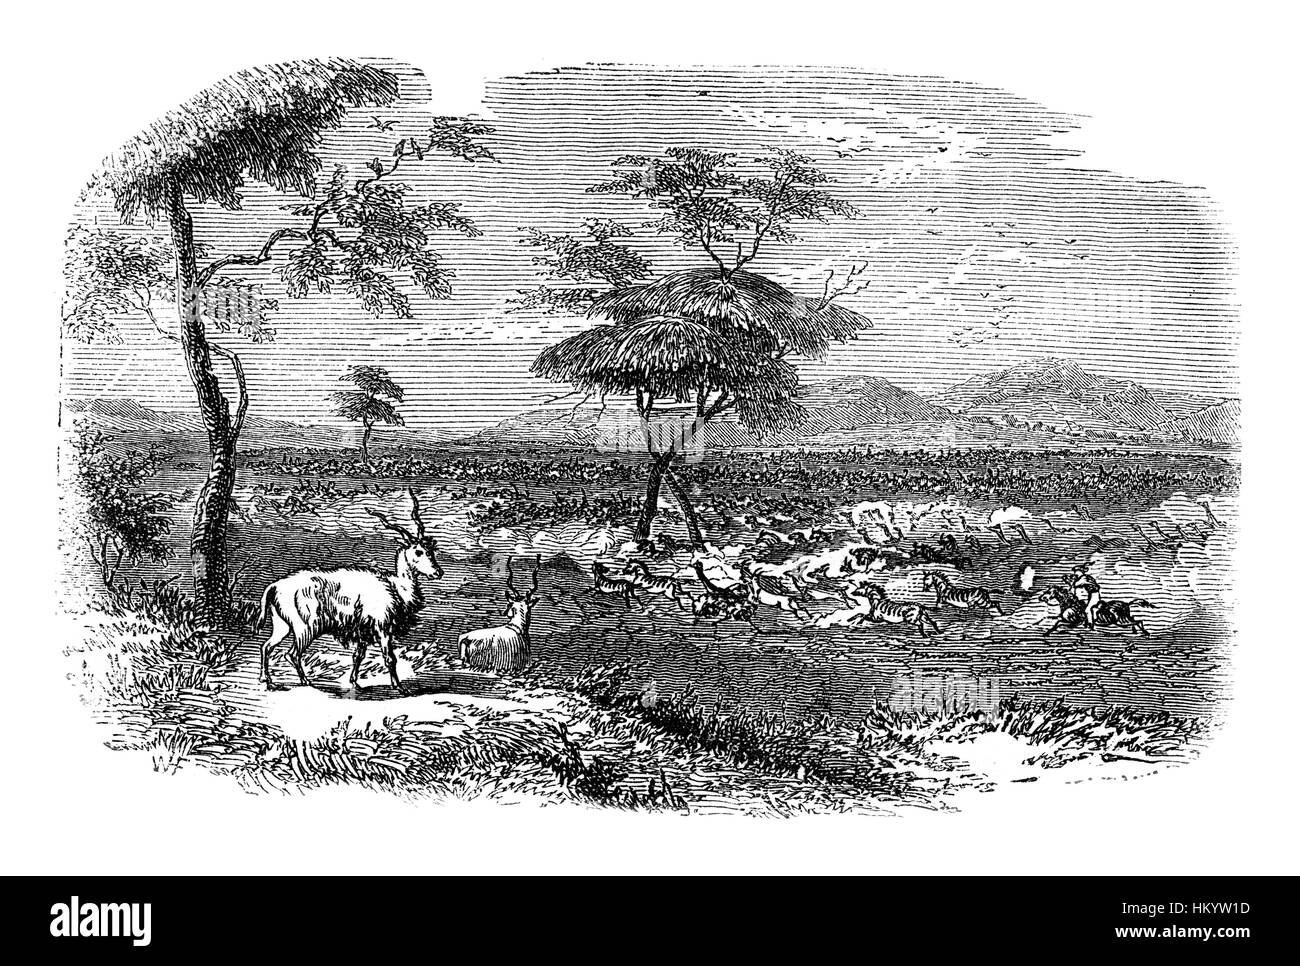 Paysage africain avec des animaux. Gravure du xixe siècle à partir de 'histoire naturelle" publié en 1866. Banque D'Images